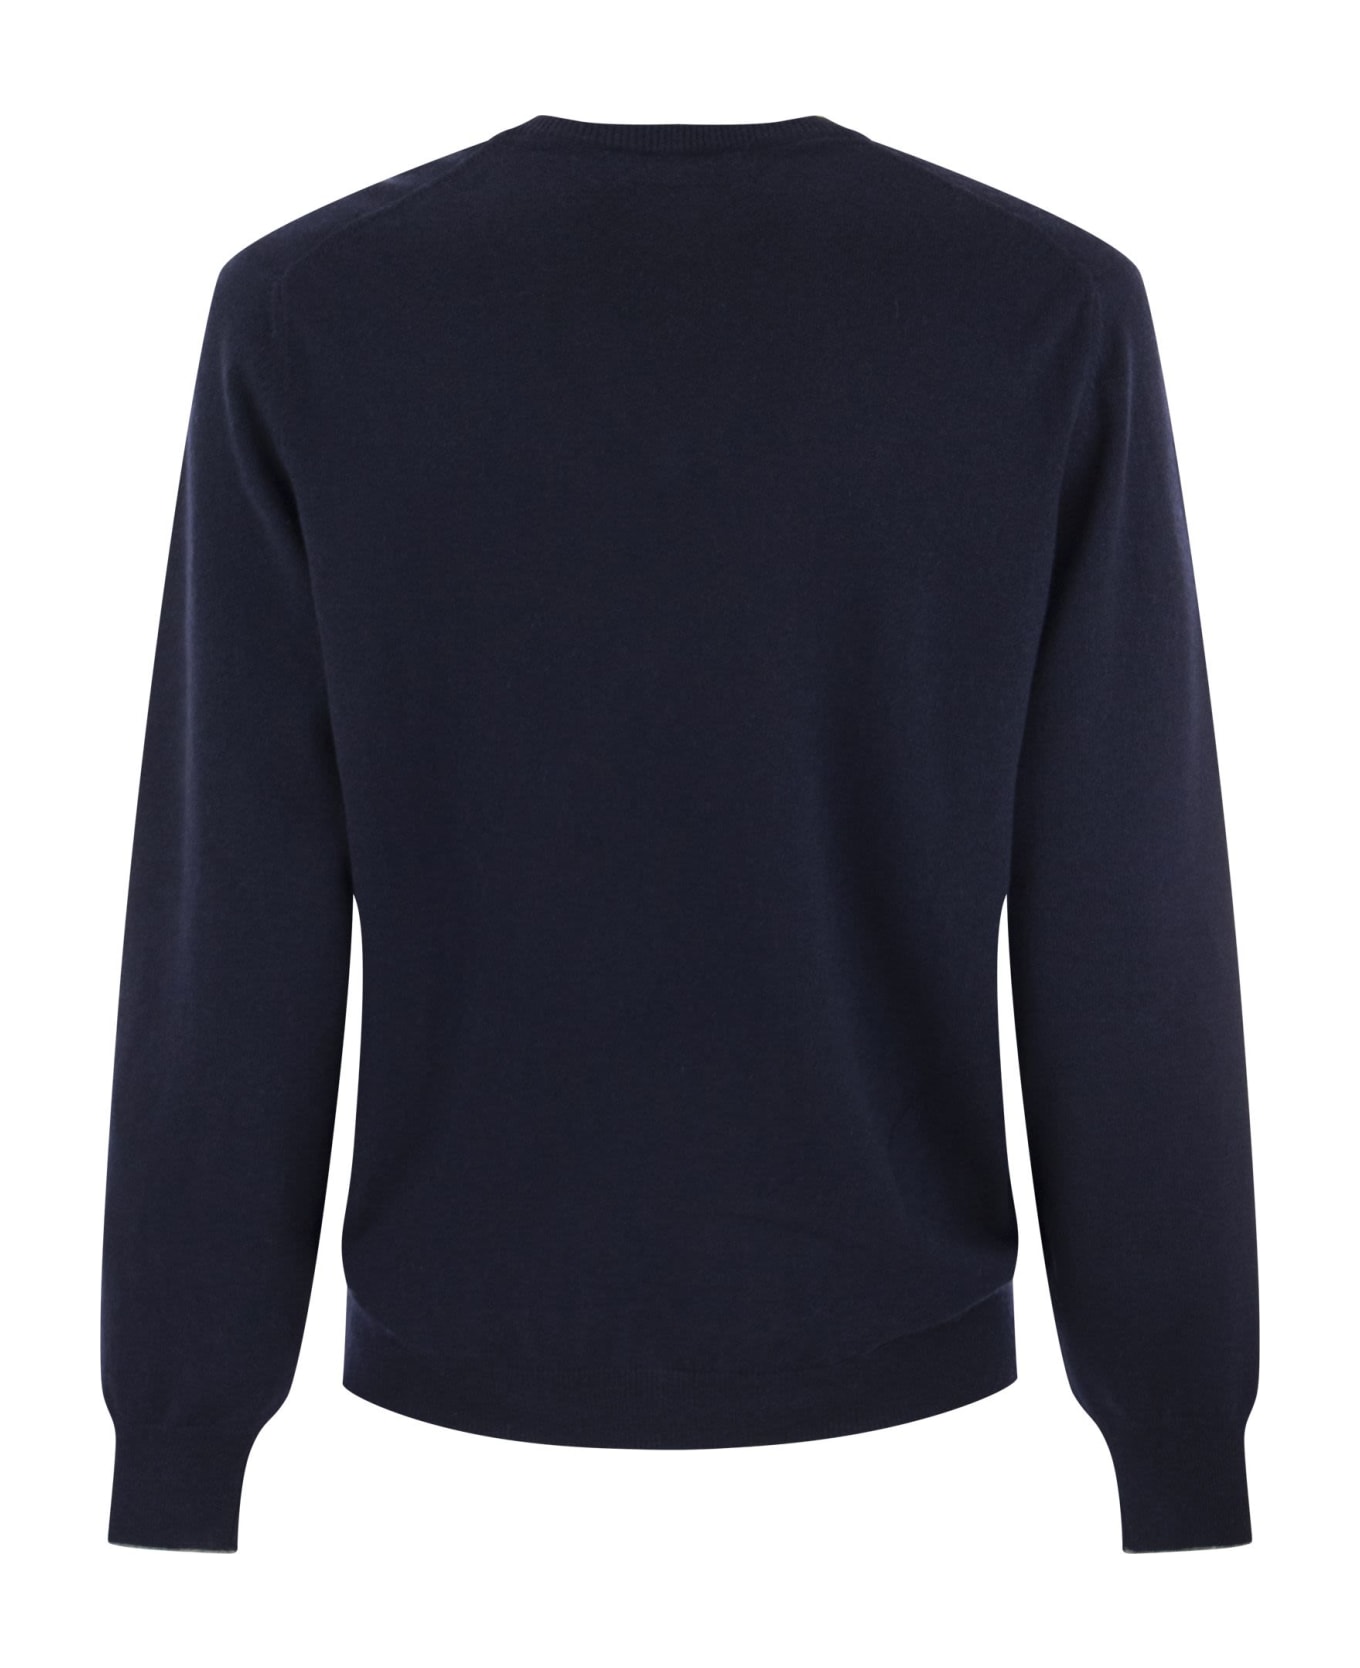 Brunello Cucinelli Cashmere Sweater - Navy Blue